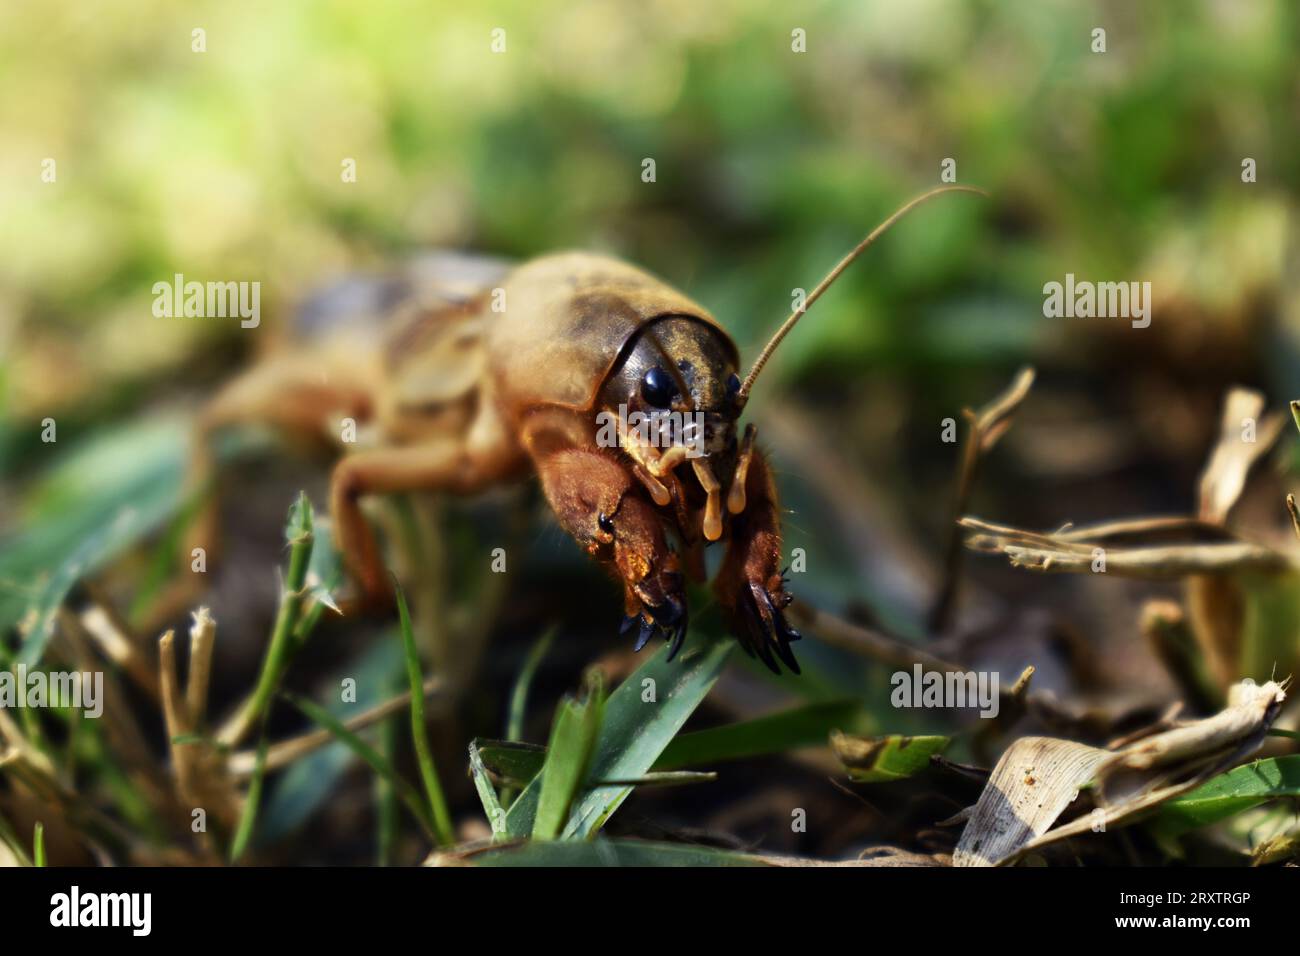 Mole Cricket: Unique Subterranean Insect in the Lawn Stock Photo